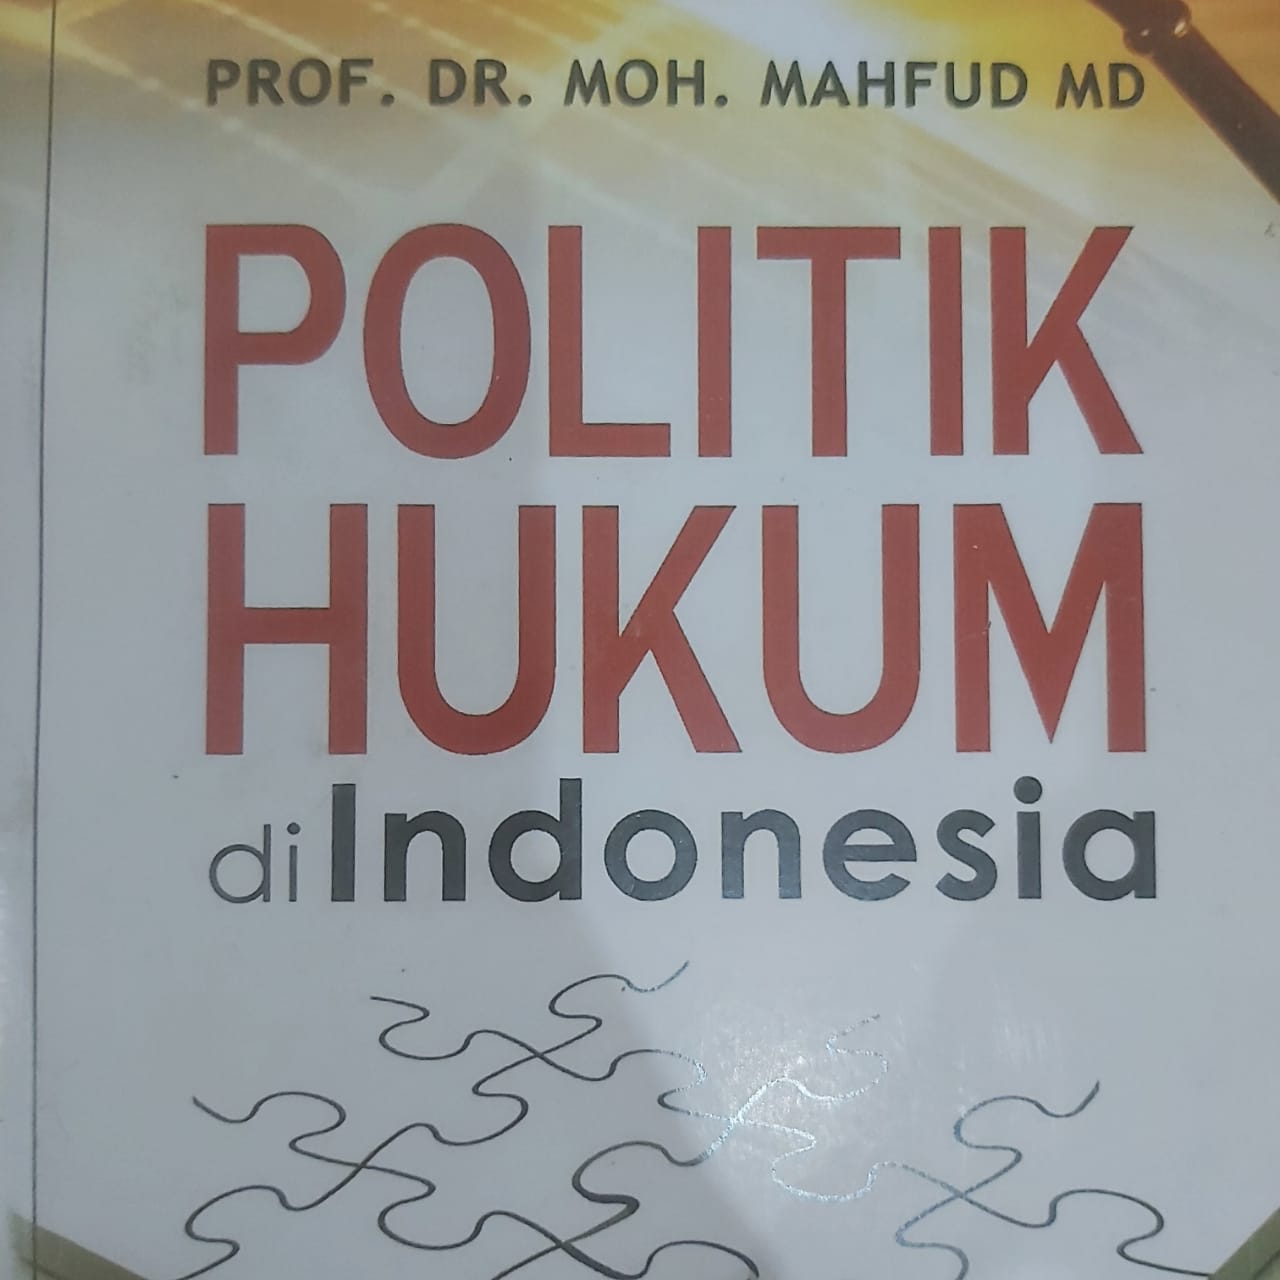 POLITIK HUKUM DI INDONESIA